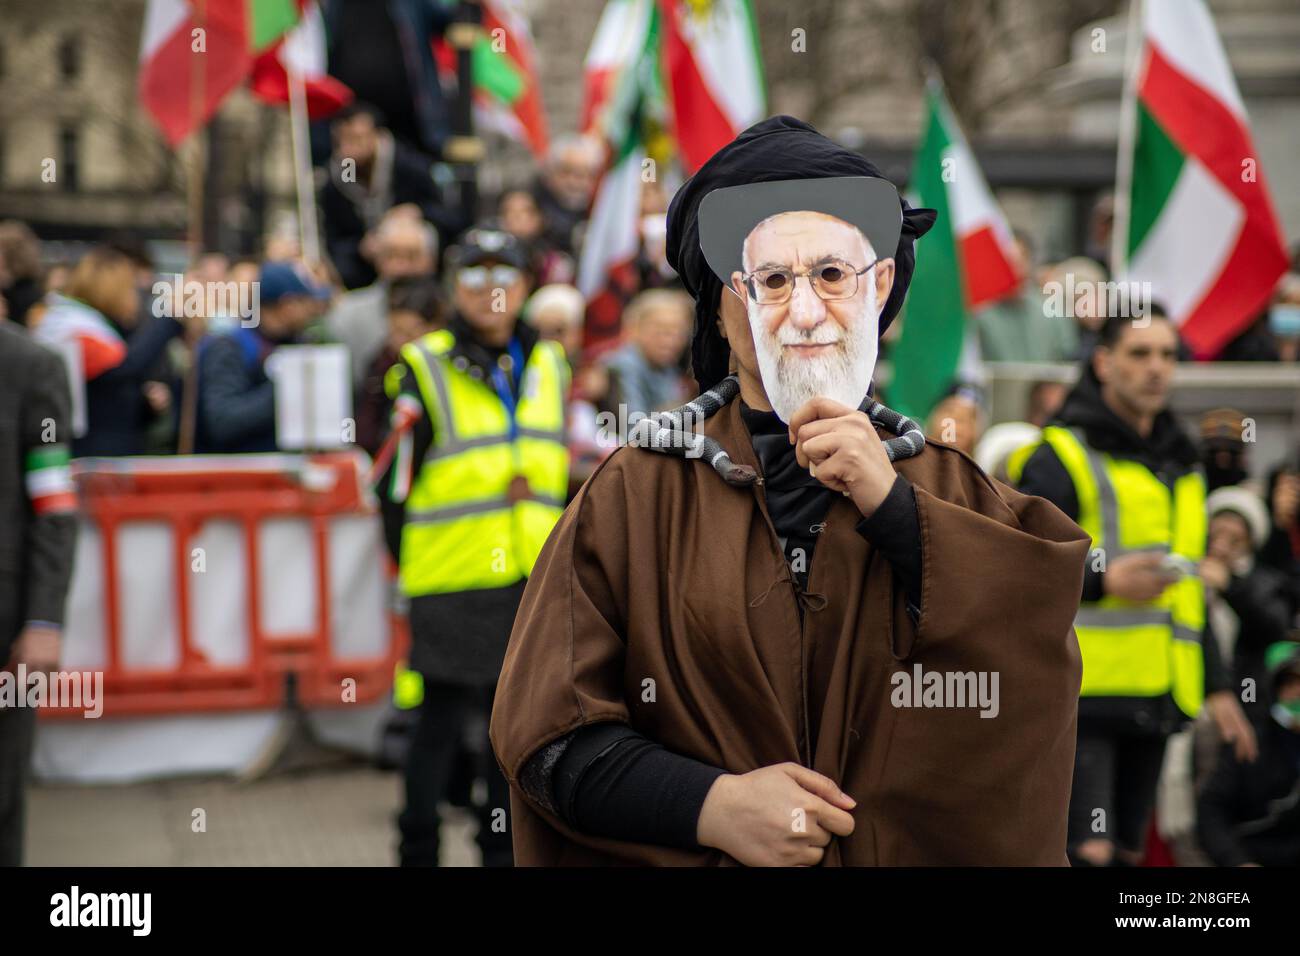 Londra, Regno Unito - 11 febbraio 2023: Khamenei, il leader supremo dell'Iran, è rappresentato in una performance di manifestanti. Oggi ricorre il 44th° anniversario della Rivoluzione islamica in Iran. Dopo più di cinque mesi di continua protesta a sostegno della donna, della vita, del movimento per la libertà, migliaia di manifestanti si sono riuniti a Trafalgar Sq. Denunciare il regime in Iran. I manifestanti tenevano bandiera Shir-o-Khorshid (Leone e Sole) dell'Iran, la bandiera, o il suo emblema, facevano parte dell'identità nazionale iraniana per secoli, che fu cambiata dopo la Rivoluzione islamica del 1979. Credit: Sinai Noor/Alamy Live News Foto Stock